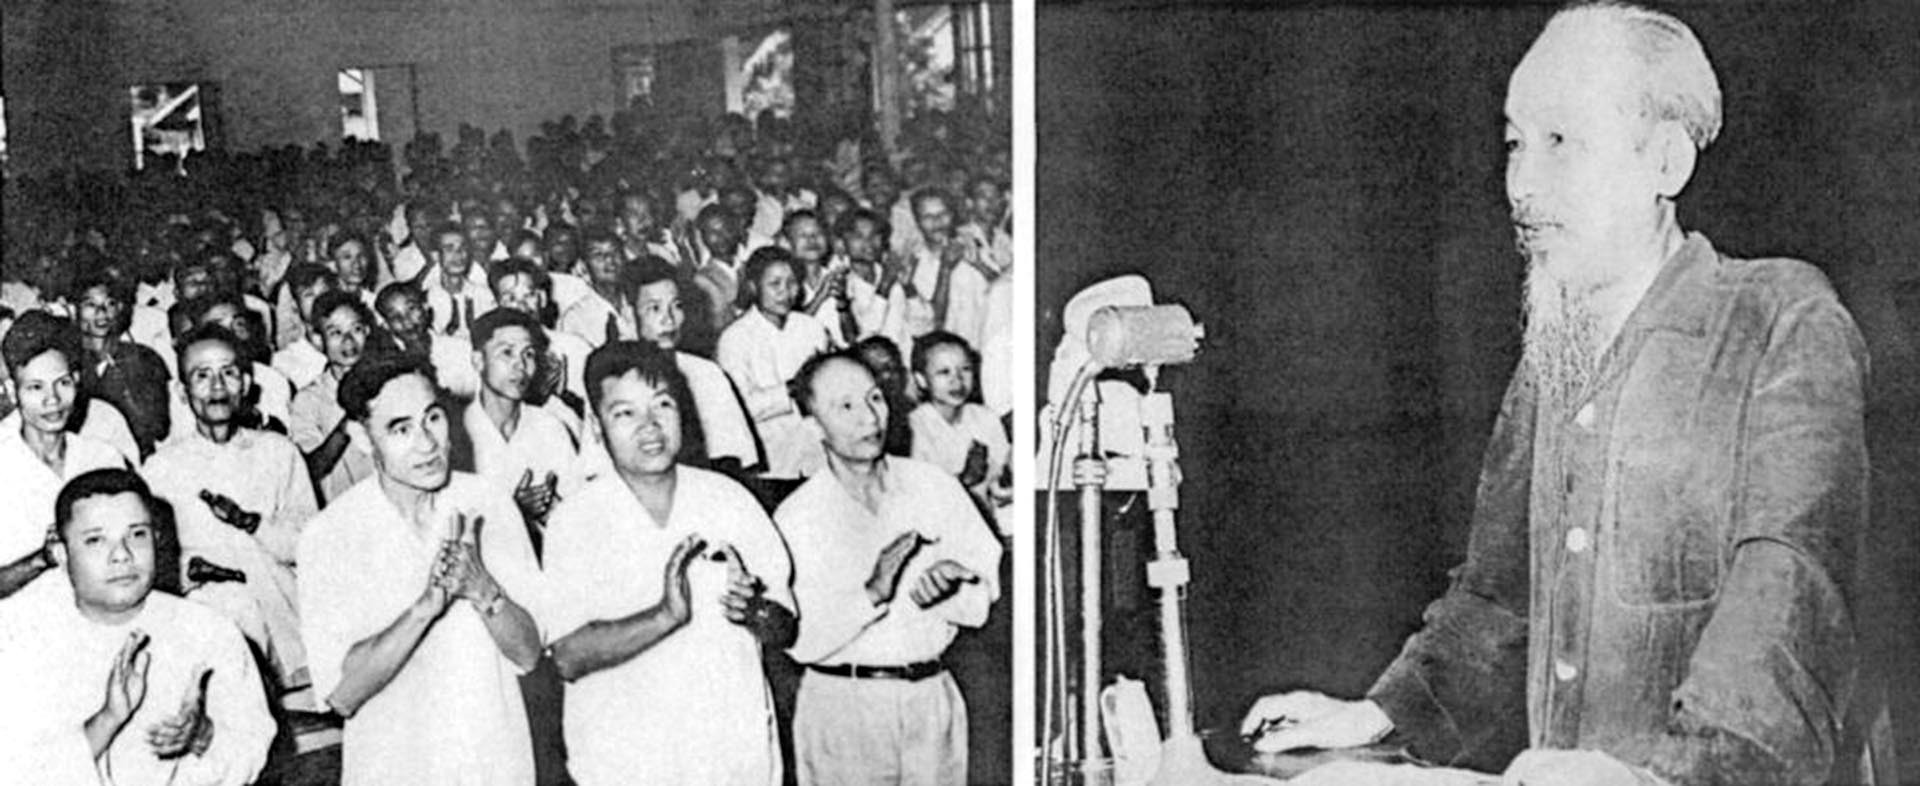 Chủ tịch Hồ Chí Minh nói chuyện tại Hội nghị Ngoại giao lần thứ hai tại Trụ sở Bộ Ngoại giao - số 1 Tôn Thất Đàm, năm 1962. (Ảnh tư liệu)